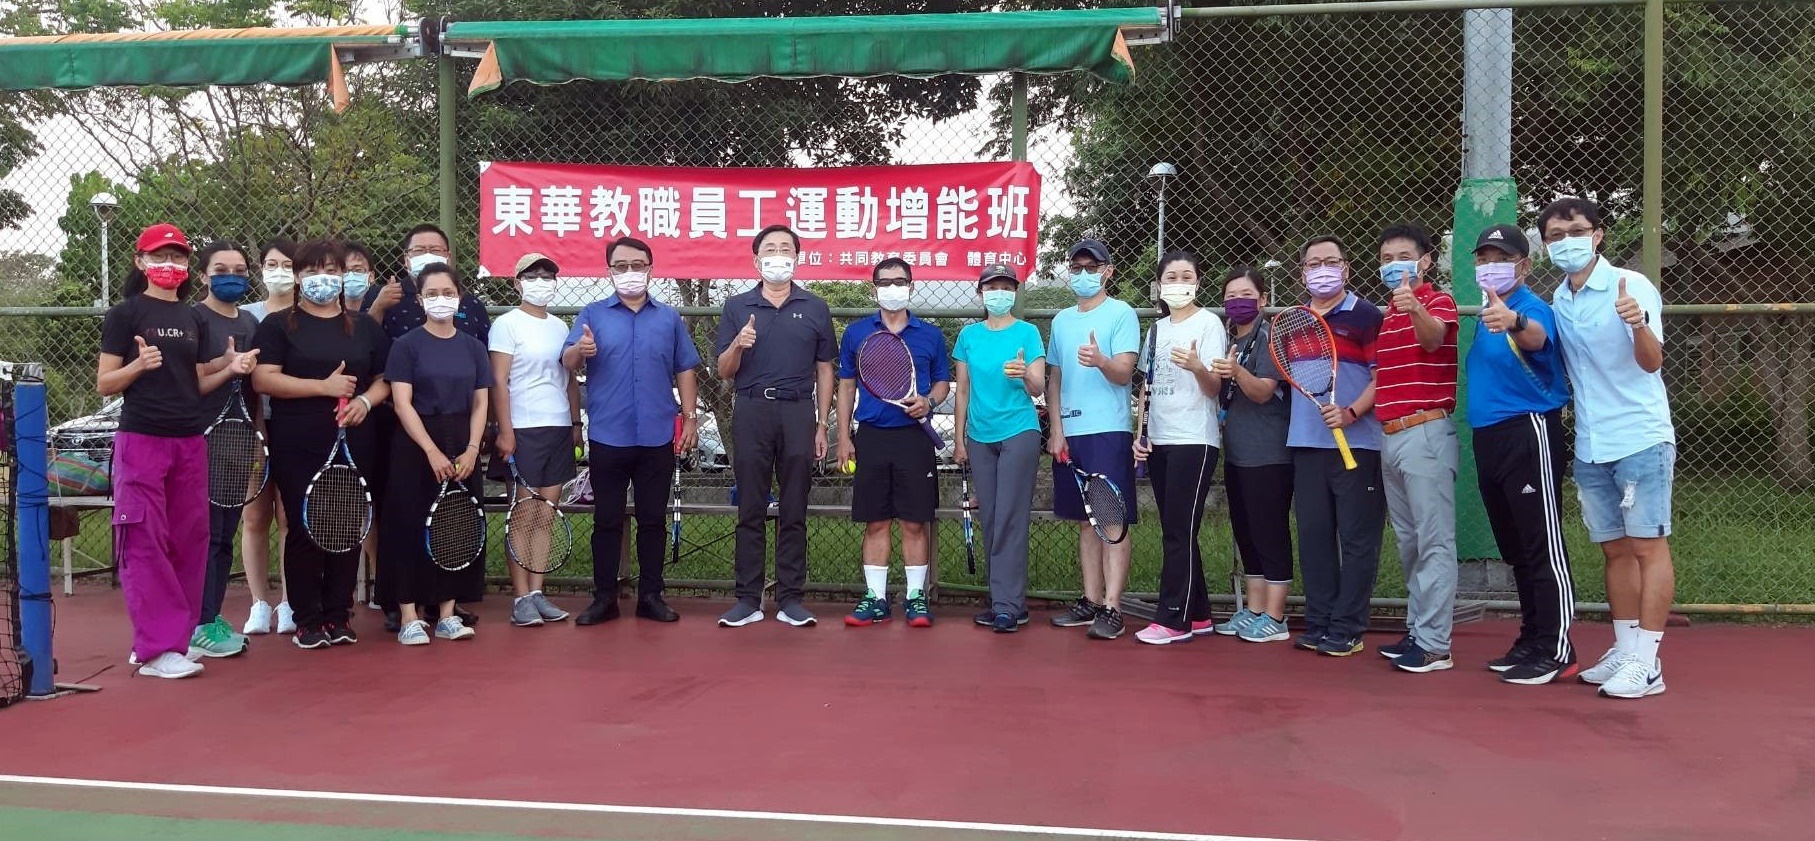 參加「教職員工初階網球課程」人員快樂合照